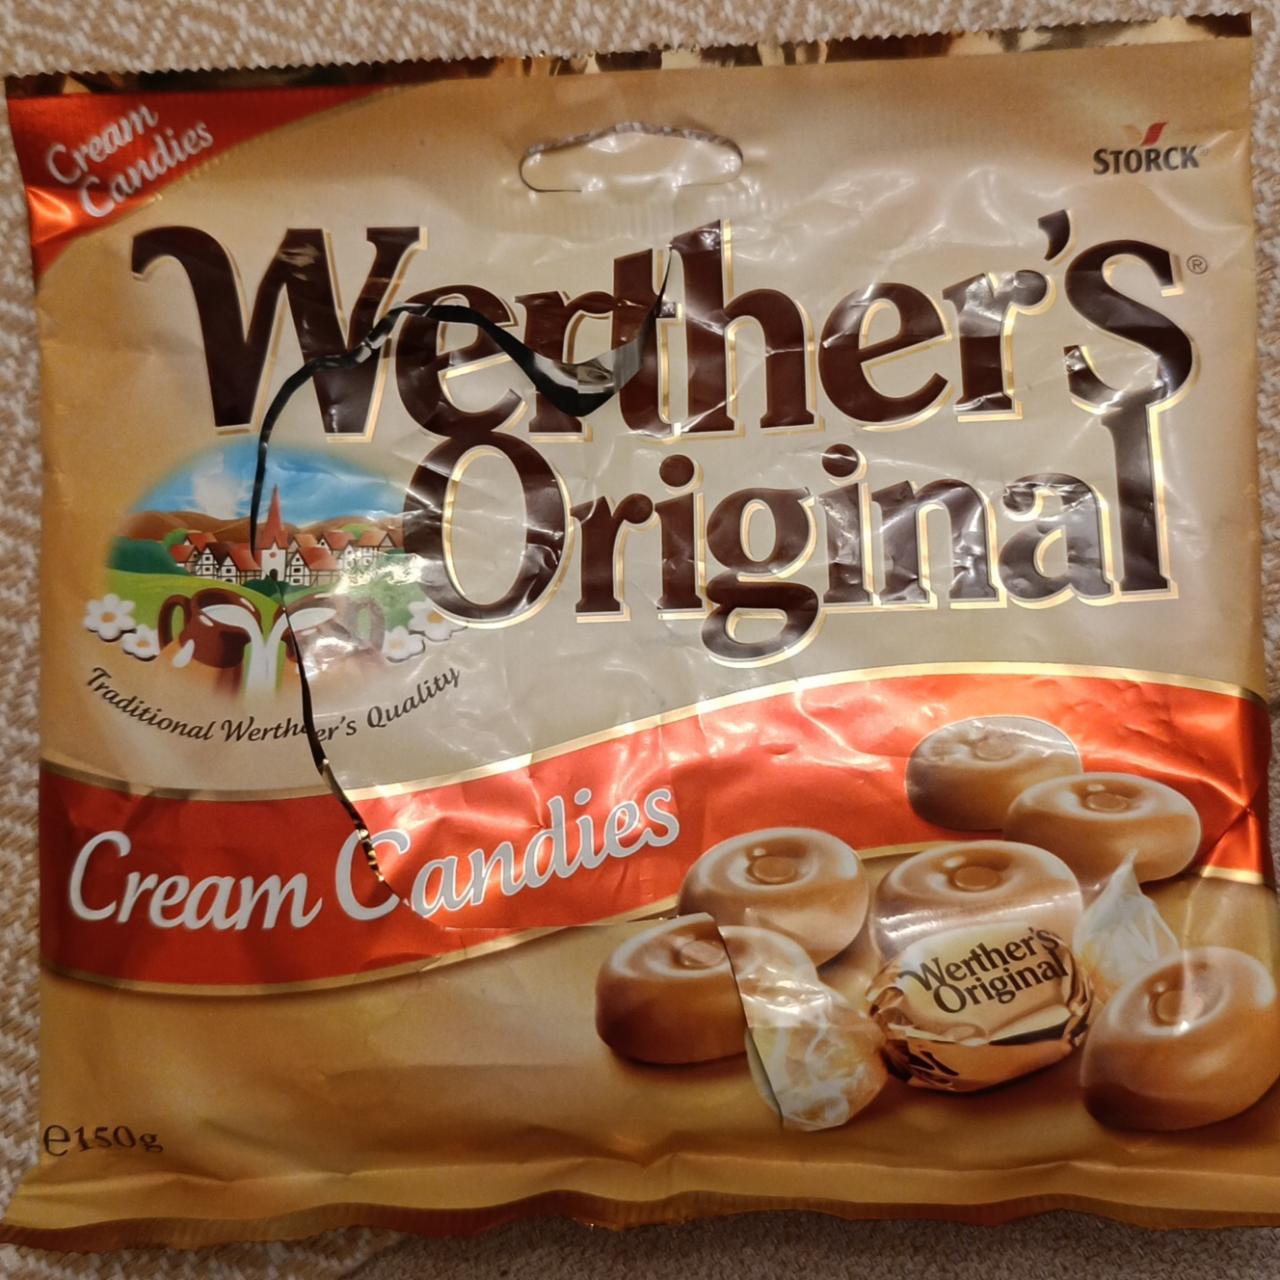 Fotografie - Werther's Original Cream Candies Storck